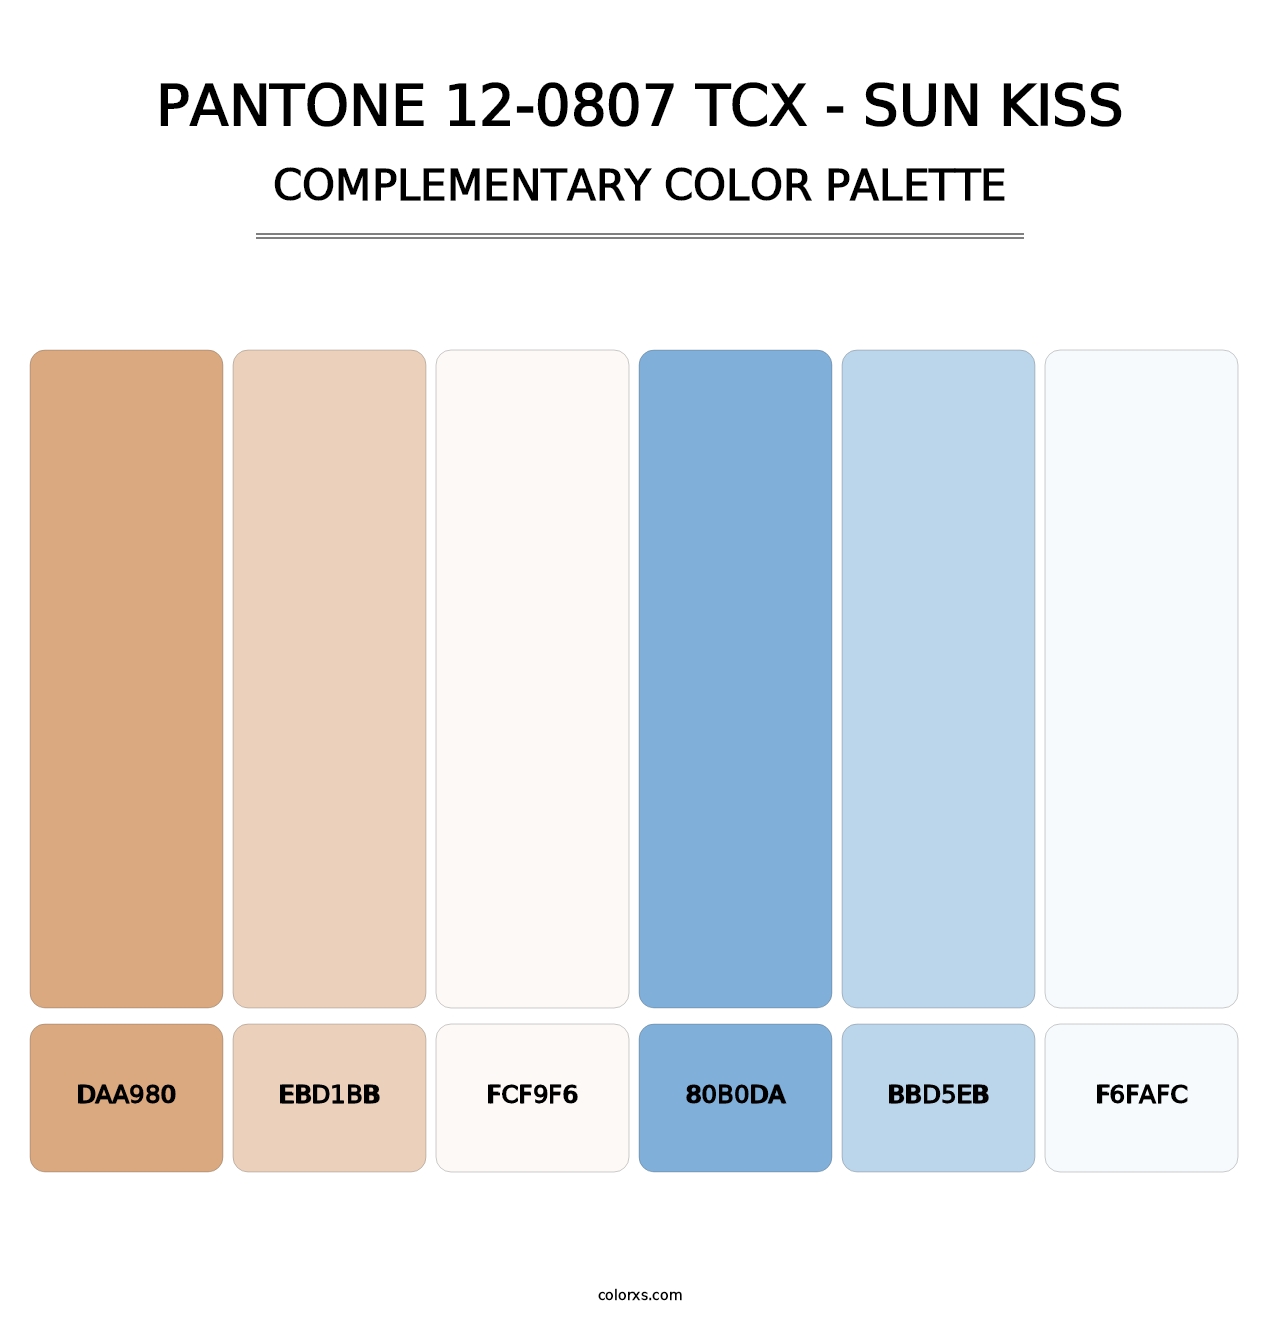 PANTONE 12-0807 TCX - Sun Kiss - Complementary Color Palette